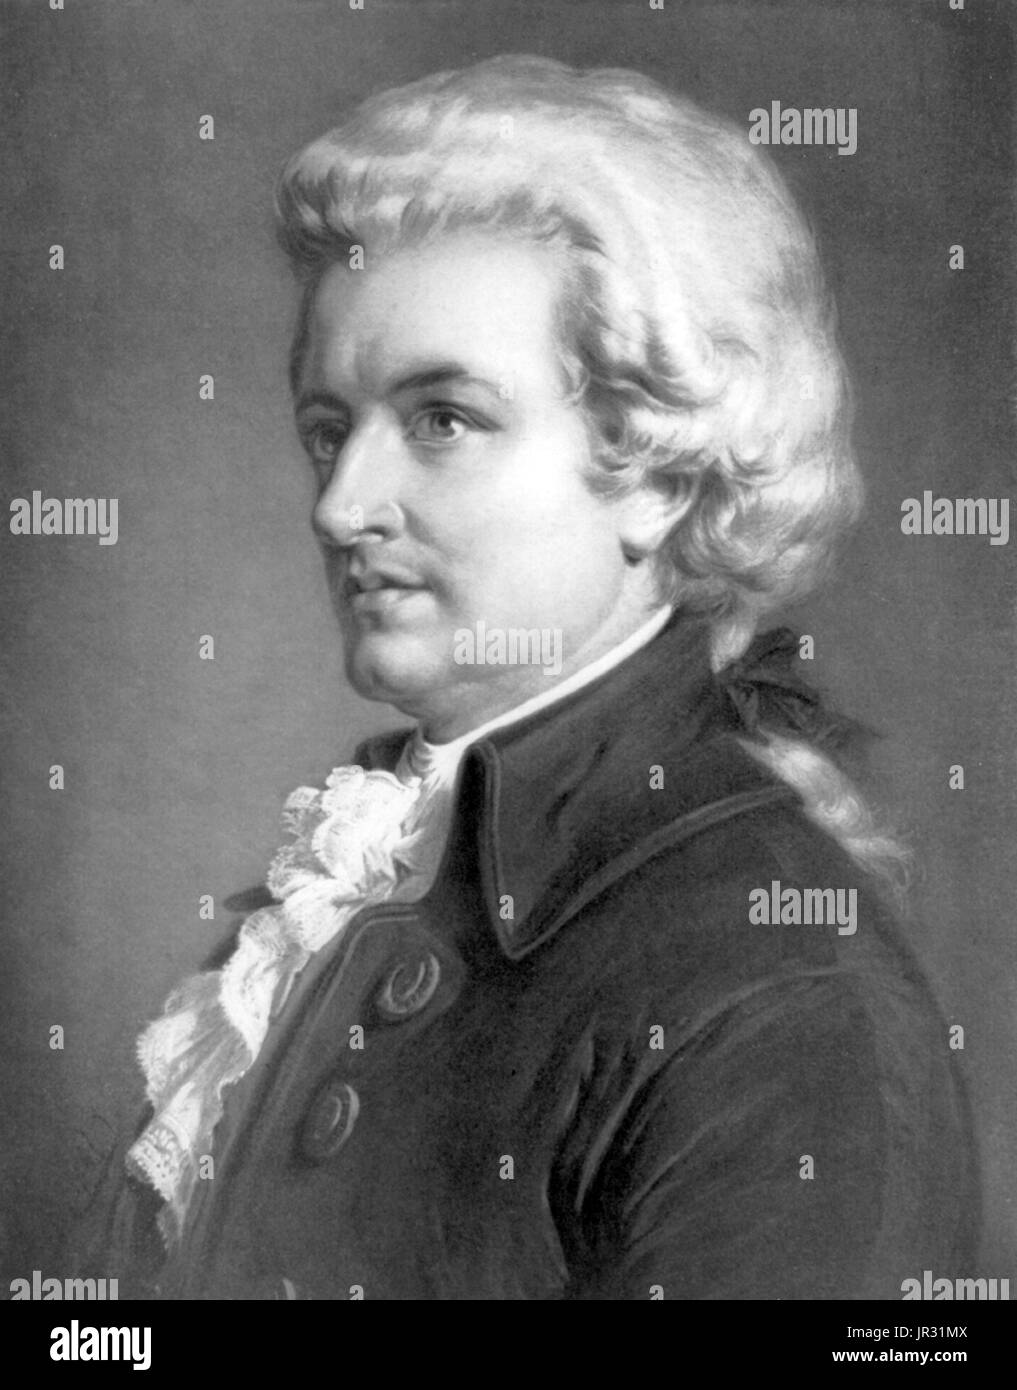 Wolfgang Amadeus Mozart (27. Januar 1756 - 5. Dezember 1791) war eine produktivsten und einflussreichsten Komponisten der Klassik. Er komponierte über 600 Werke, viele anerkannt als Zinnen der Symphonik, Concertante, Kammer, Opern, und Chormusik. Er gehört zu den meisten nachhaltig beliebt von klassischen Komponisten. Mozart war ein Wunderkind zuständigen auf Tastatur und Geige, er komponierte im Alter von fünf Jahren und spielte vor europäischen Königshäusern. Mit 17 Jahren wurde er als Hofmusiker in Salzburg tätig, aber beim Gast in Wien im Jahre 1781, wurde er entlassen. Er entschied sich, in der Hauptstadt bleiben wo He Halbzeuge Stockfoto